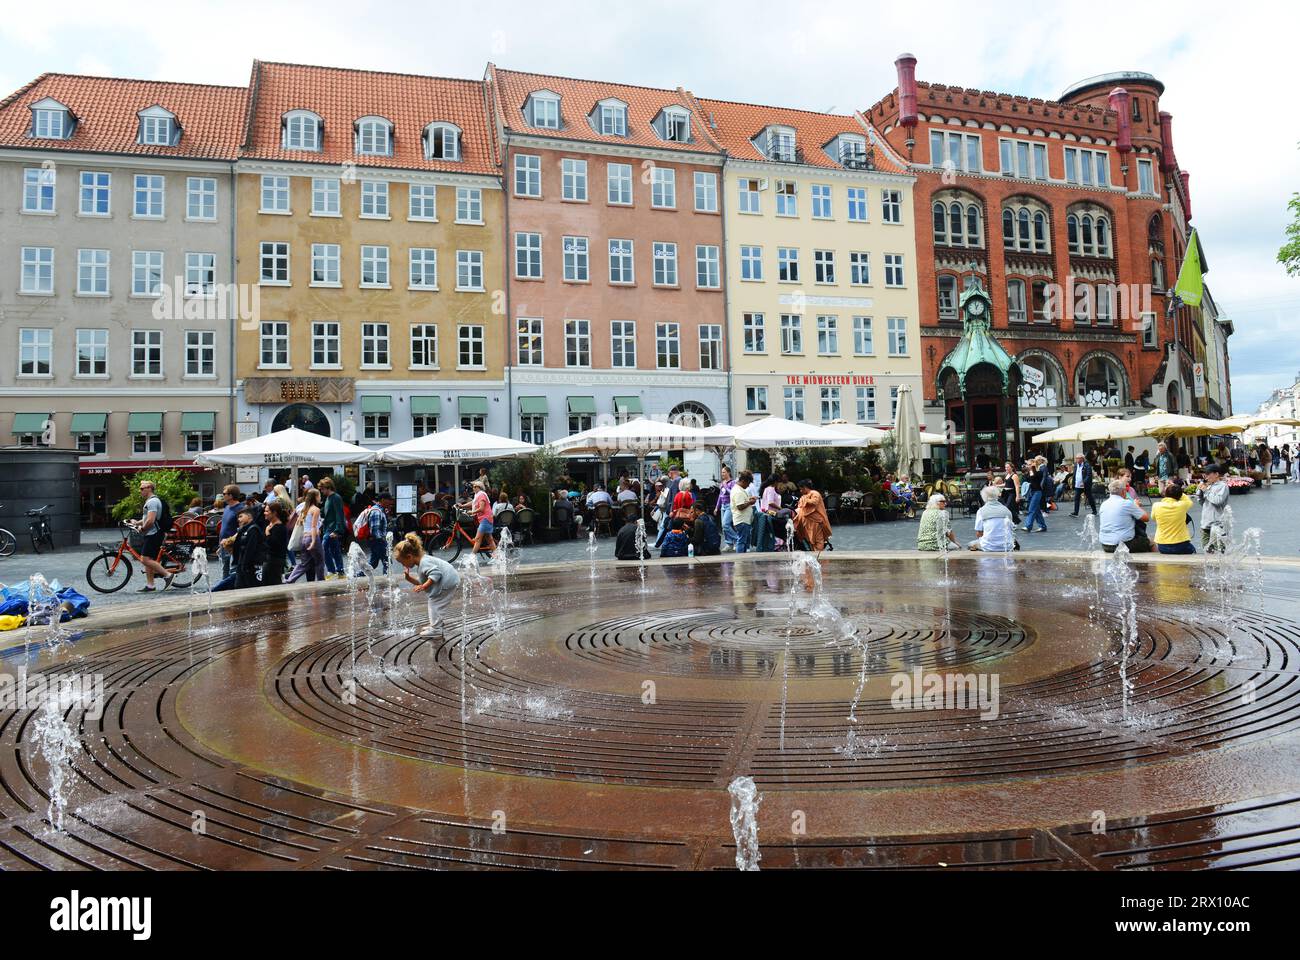 Children playing in the fountain at the Kultorvet square in Copenhagen, Denmark. Stock Photo